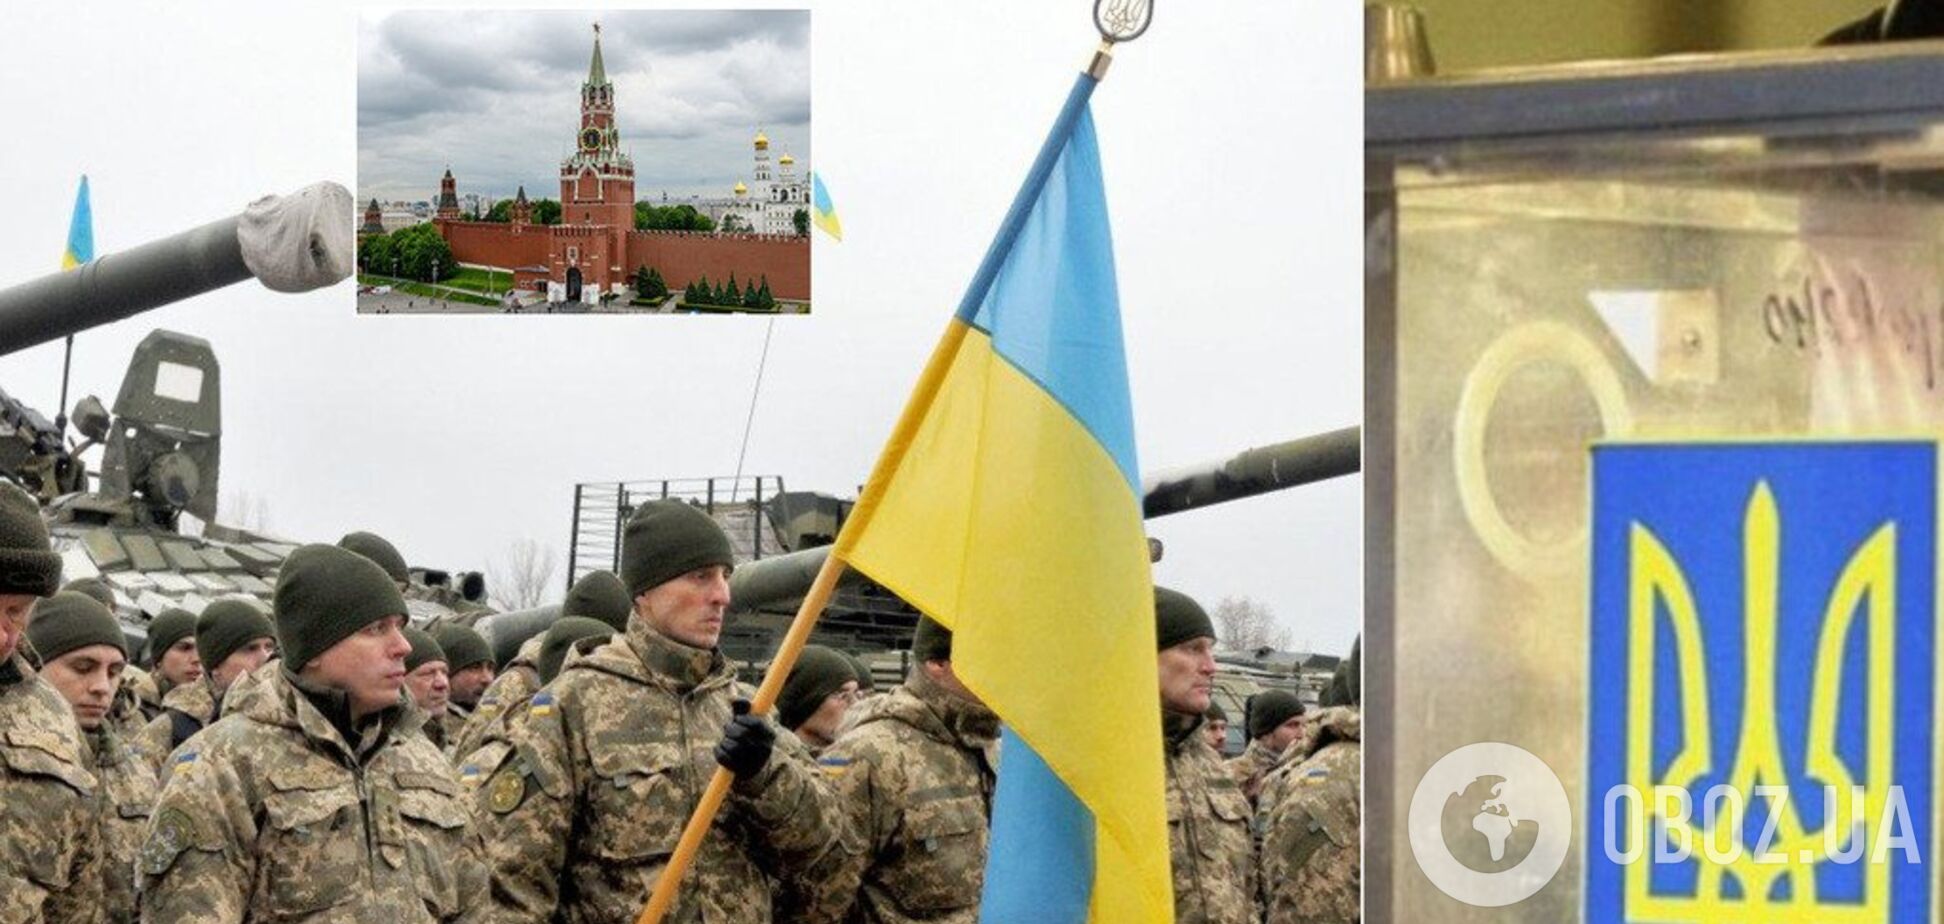 Хлопці в армії скрегочуть зубами, але Україну захищатимуть до останнього патрона – ветеран АТО